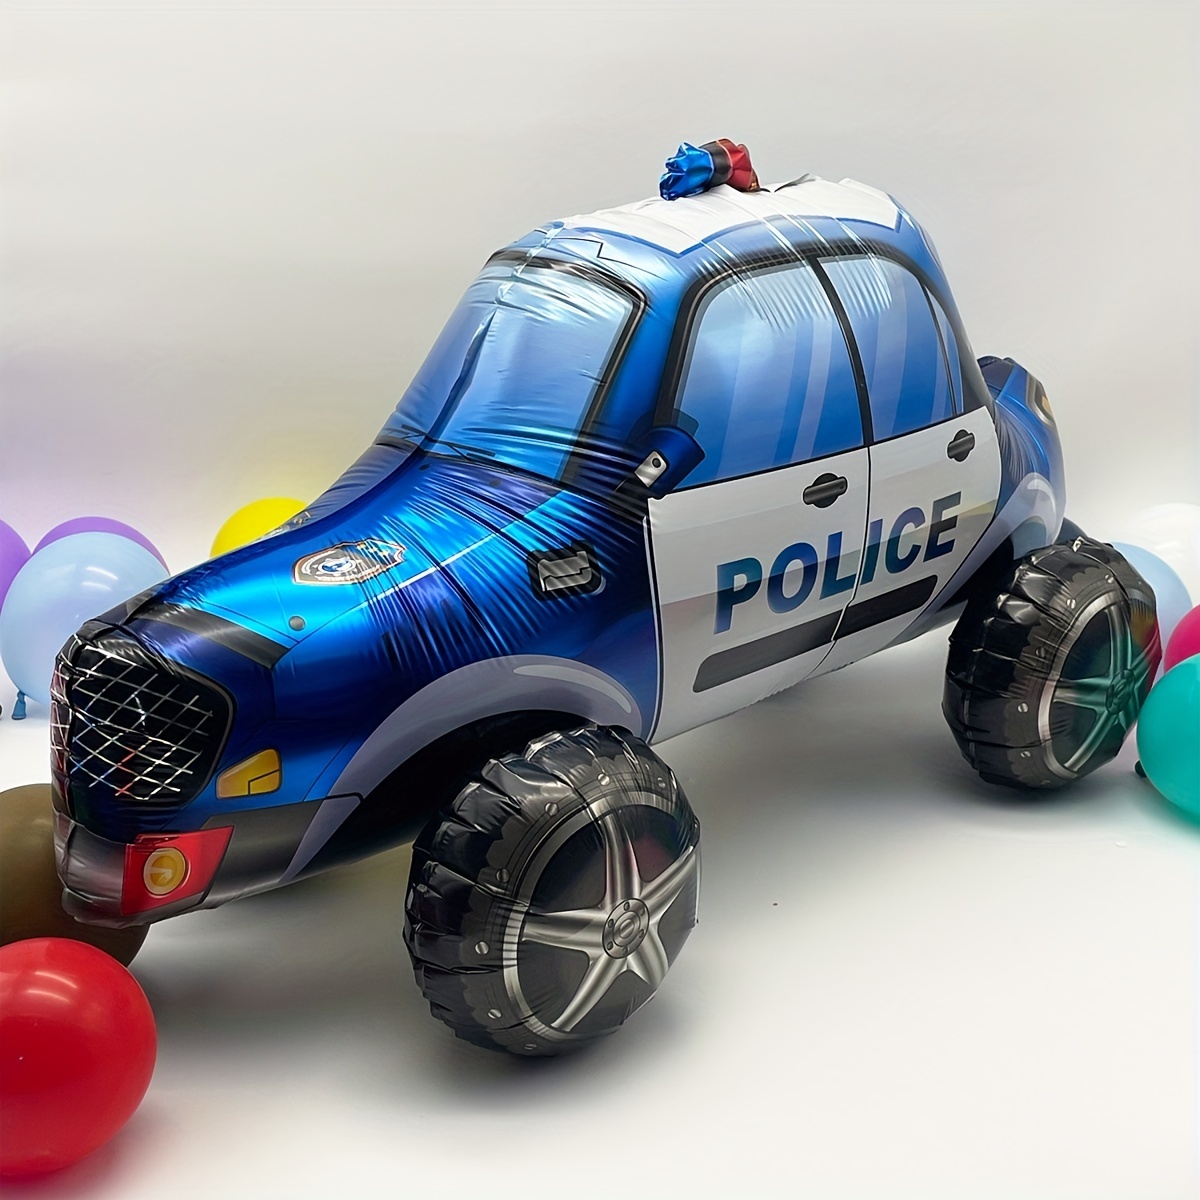 Decoración de cumpleaños coches y policias